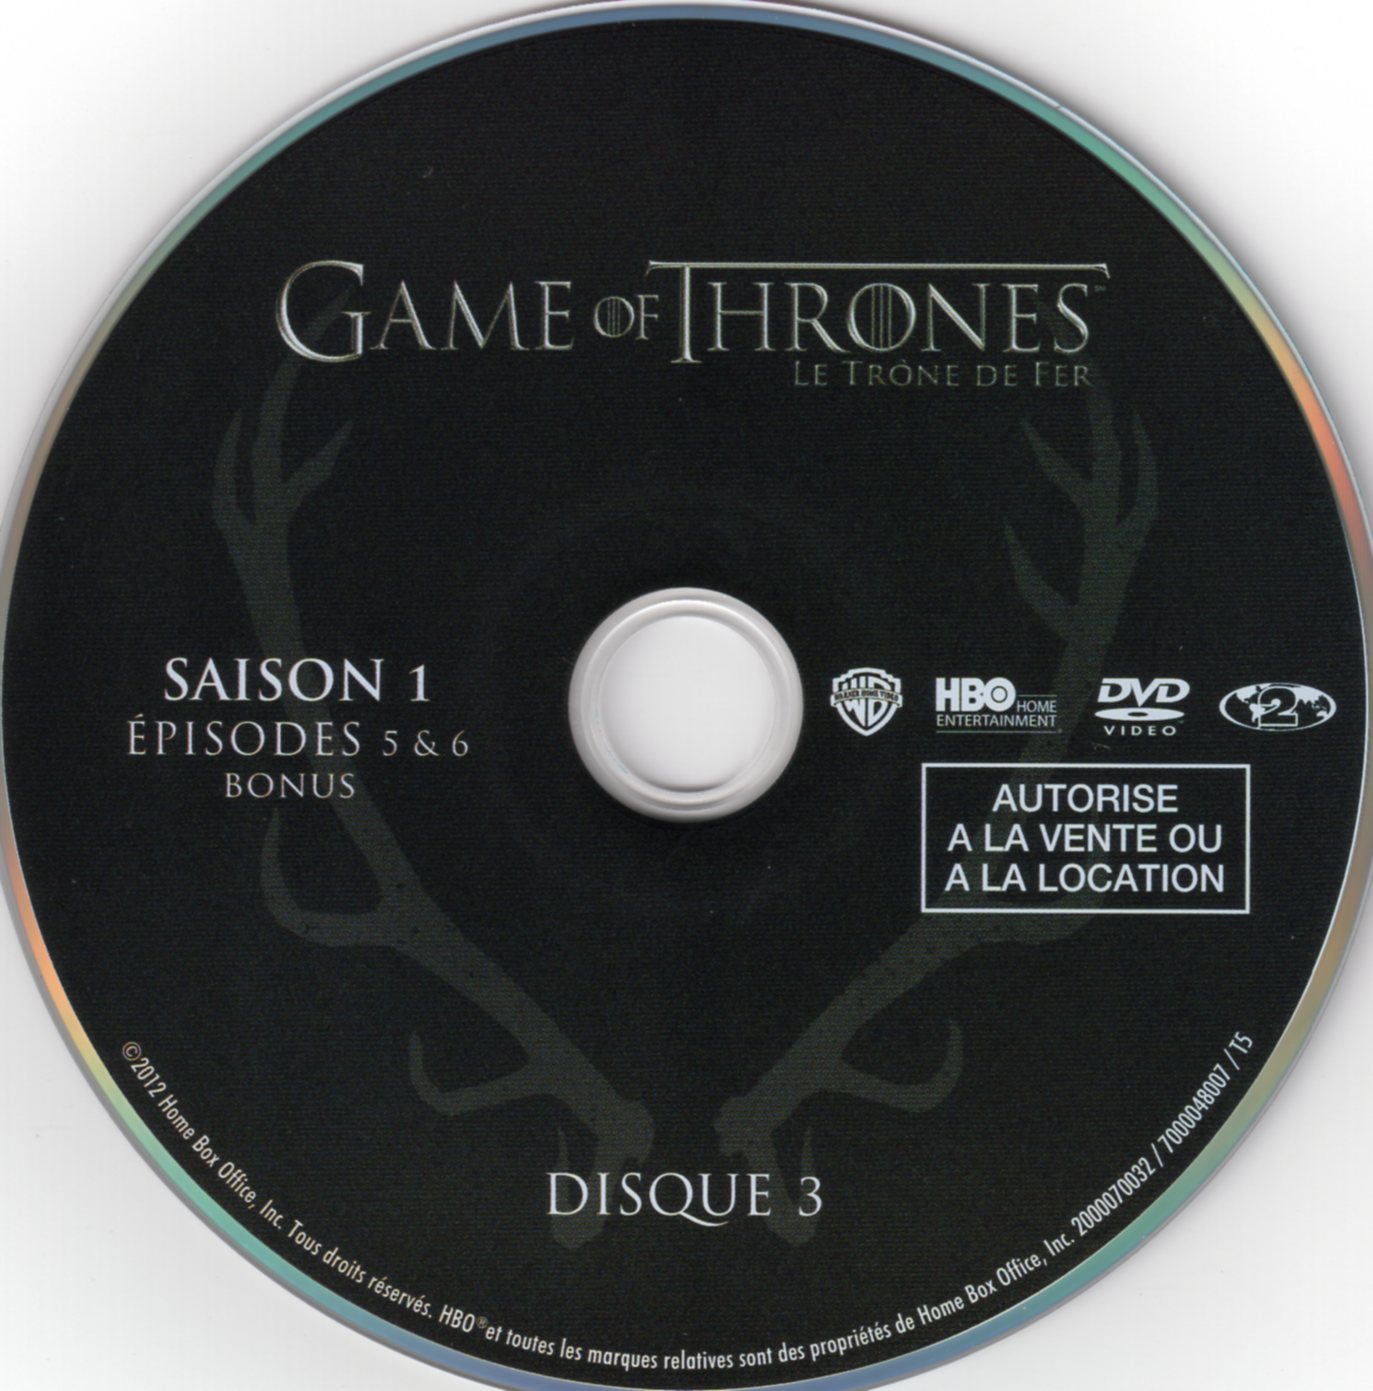 Game of thrones (le trone de fer) Saison 1 DVD 3